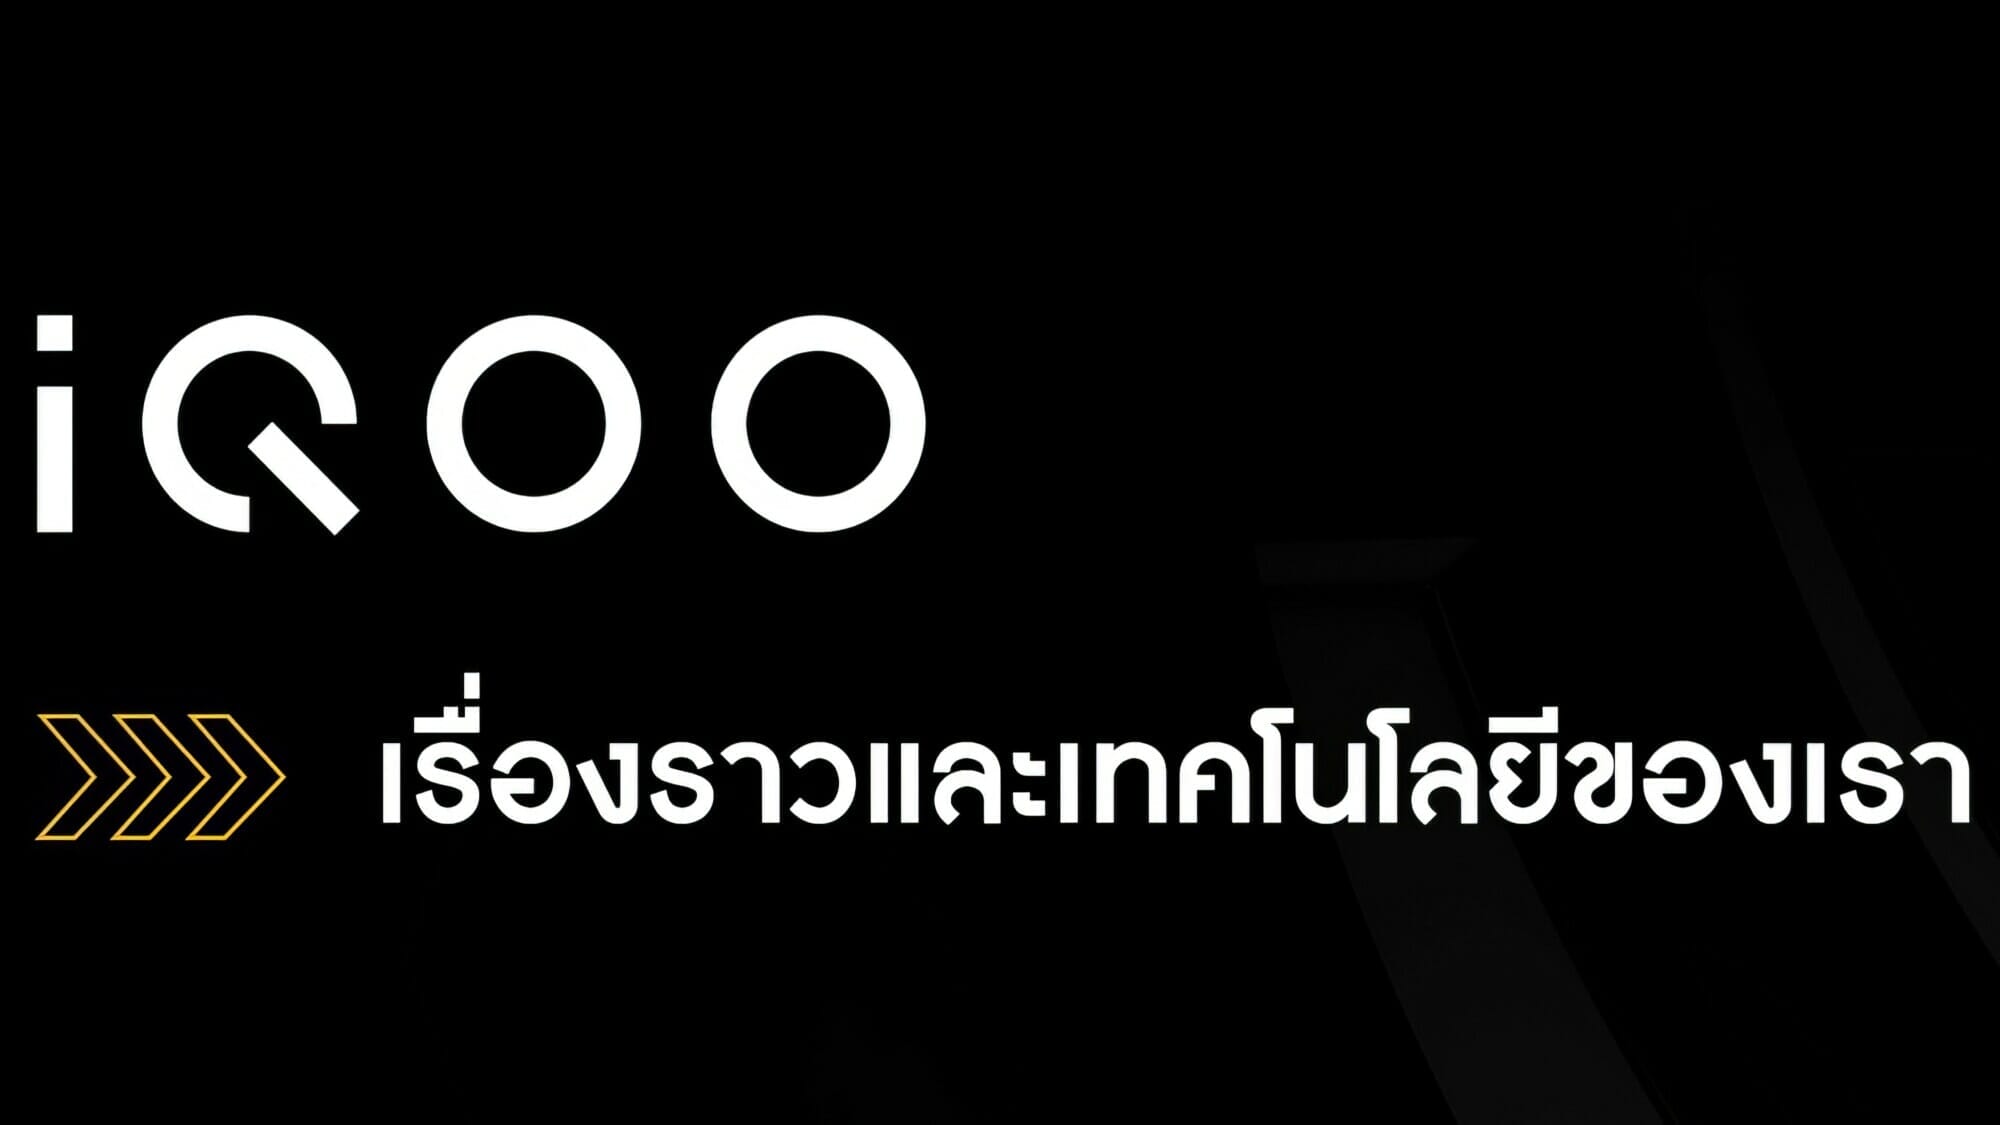 ทำความรู้จัก “iQOO” สมาร์ตโฟนตัวท็อปแบรนด์ใหม่ภายใต้ vivo ให้มากกว่าความแรง! เตรียมบุกไทยธันวาคมนี้